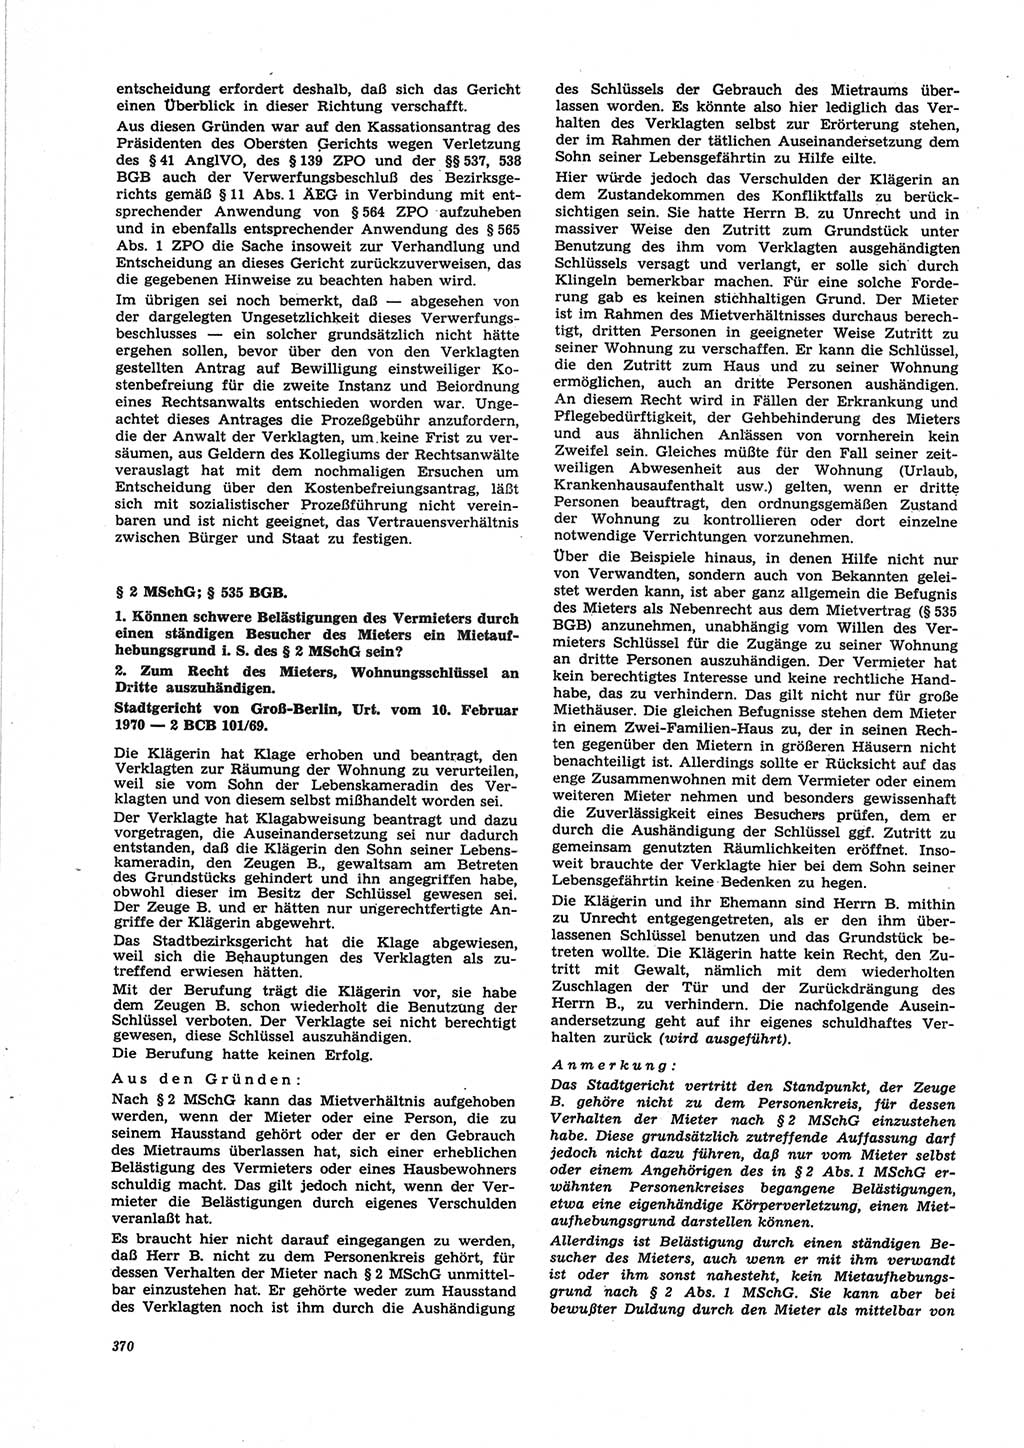 Neue Justiz (NJ), Zeitschrift für Recht und Rechtswissenschaft [Deutsche Demokratische Republik (DDR)], 25. Jahrgang 1971, Seite 370 (NJ DDR 1971, S. 370)